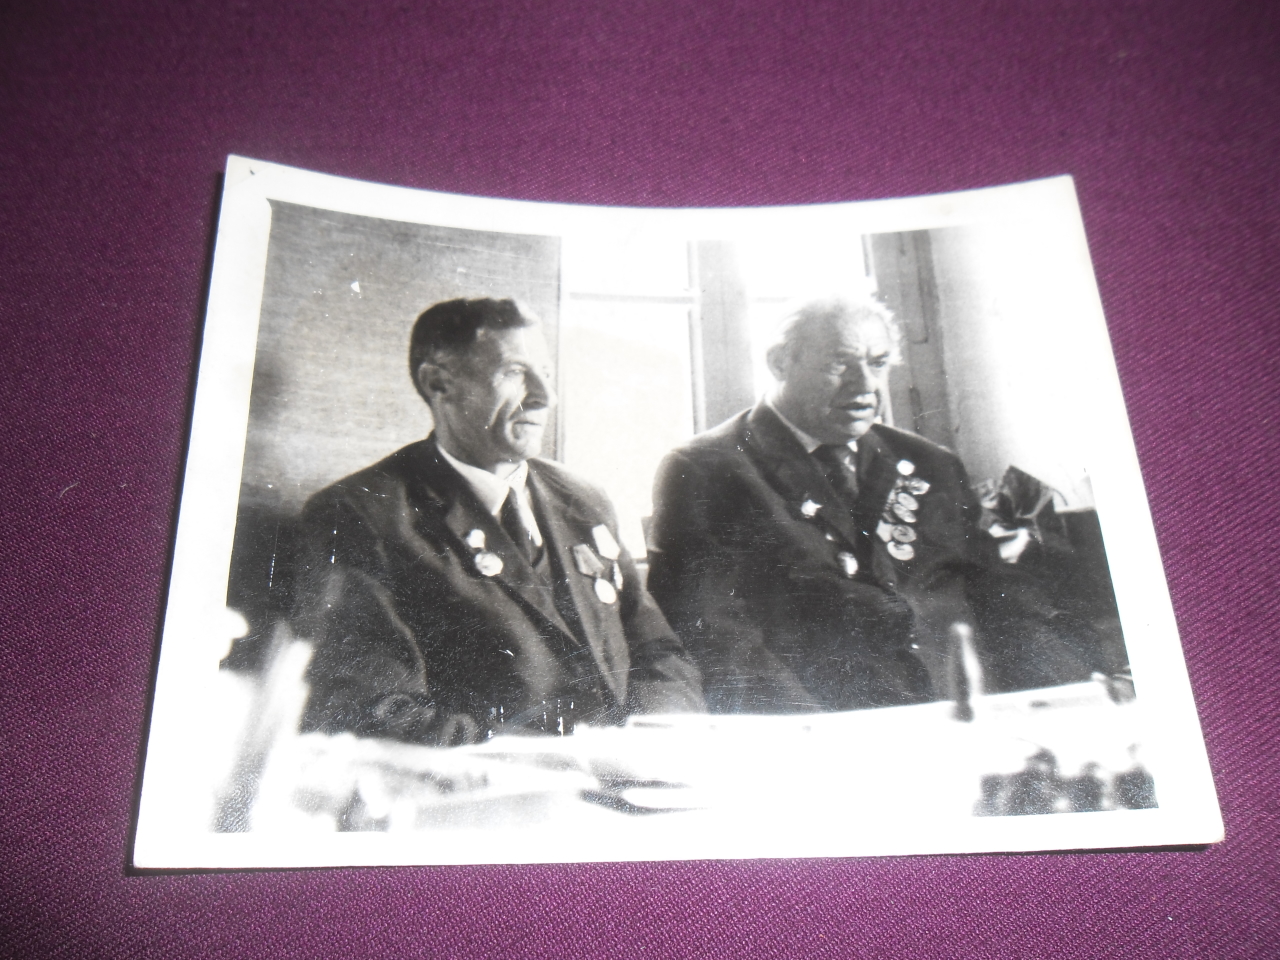 Սաղաթել Մանուկի Մնեյան (Վաստակավոր մանկավարժ, Հայրենական պատերազմի մասնակից)  և  Հովհաննես Քոլոզյան  ( Հայրենական պատերազմի մասնակից)